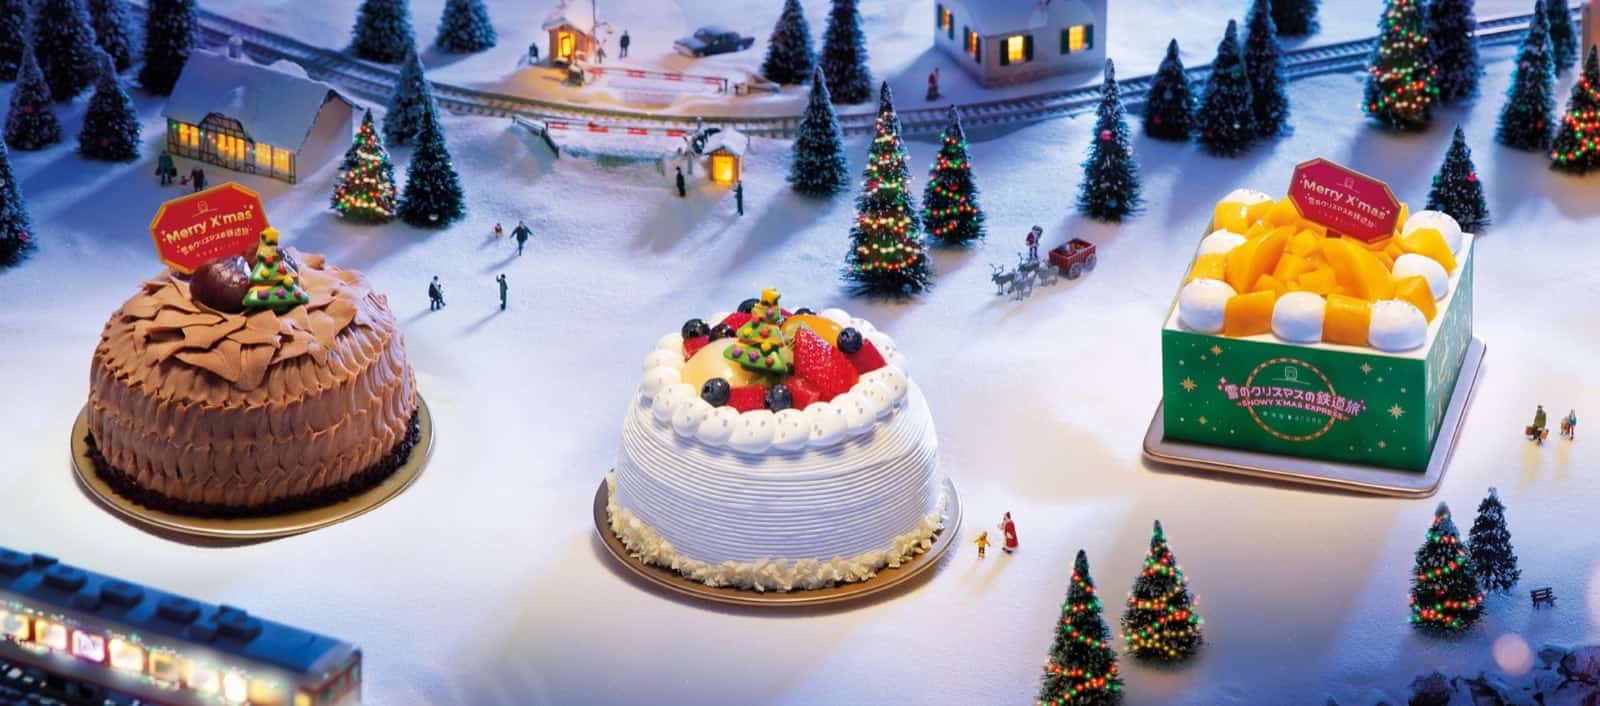 還有更多詳情/圖片arome 東海堂「雪のクリスマスの鉄道旅」聖誕蛋糕系列：優先訂購83折優惠，包幫到你搵到最正嘅優惠呀！